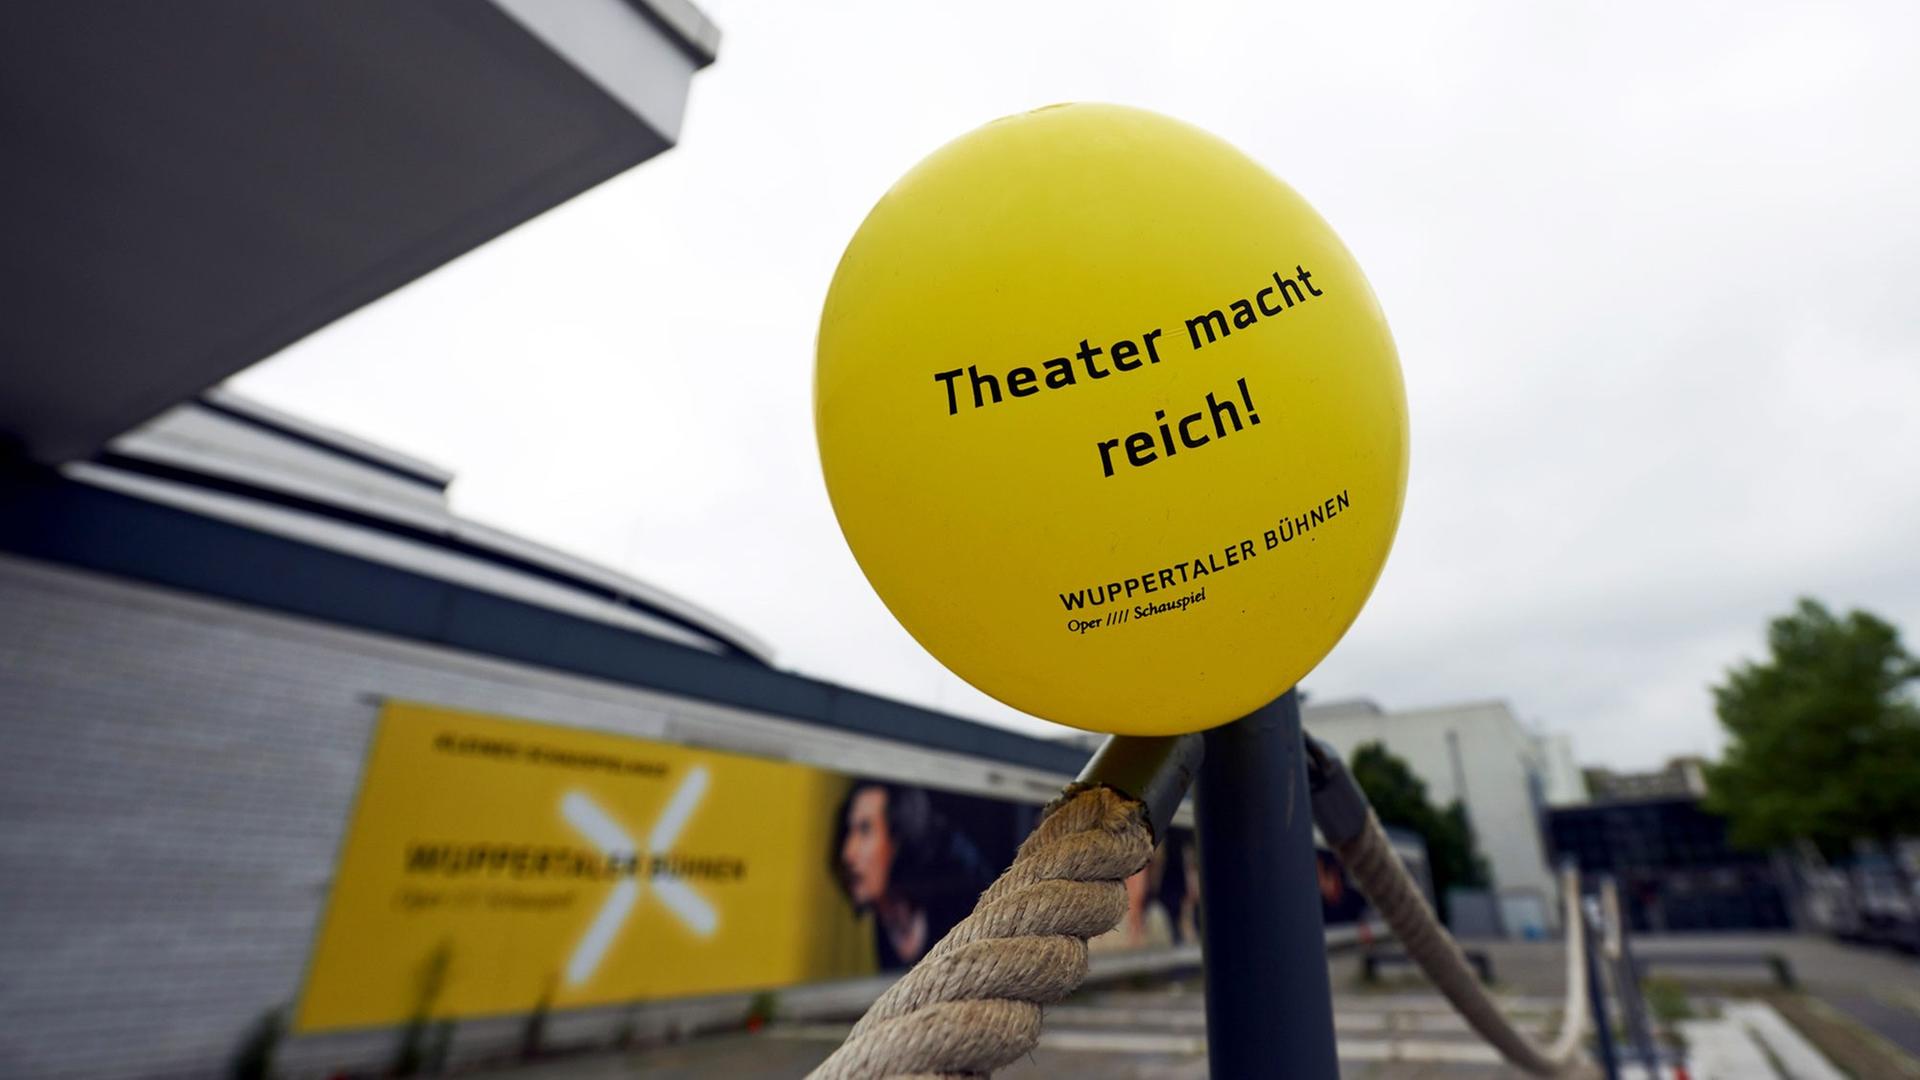 Ein Luftballon mit der Aufschrift "Theater macht reich!" vor dem geschlossenen Schauspielhaus Wuppertal.